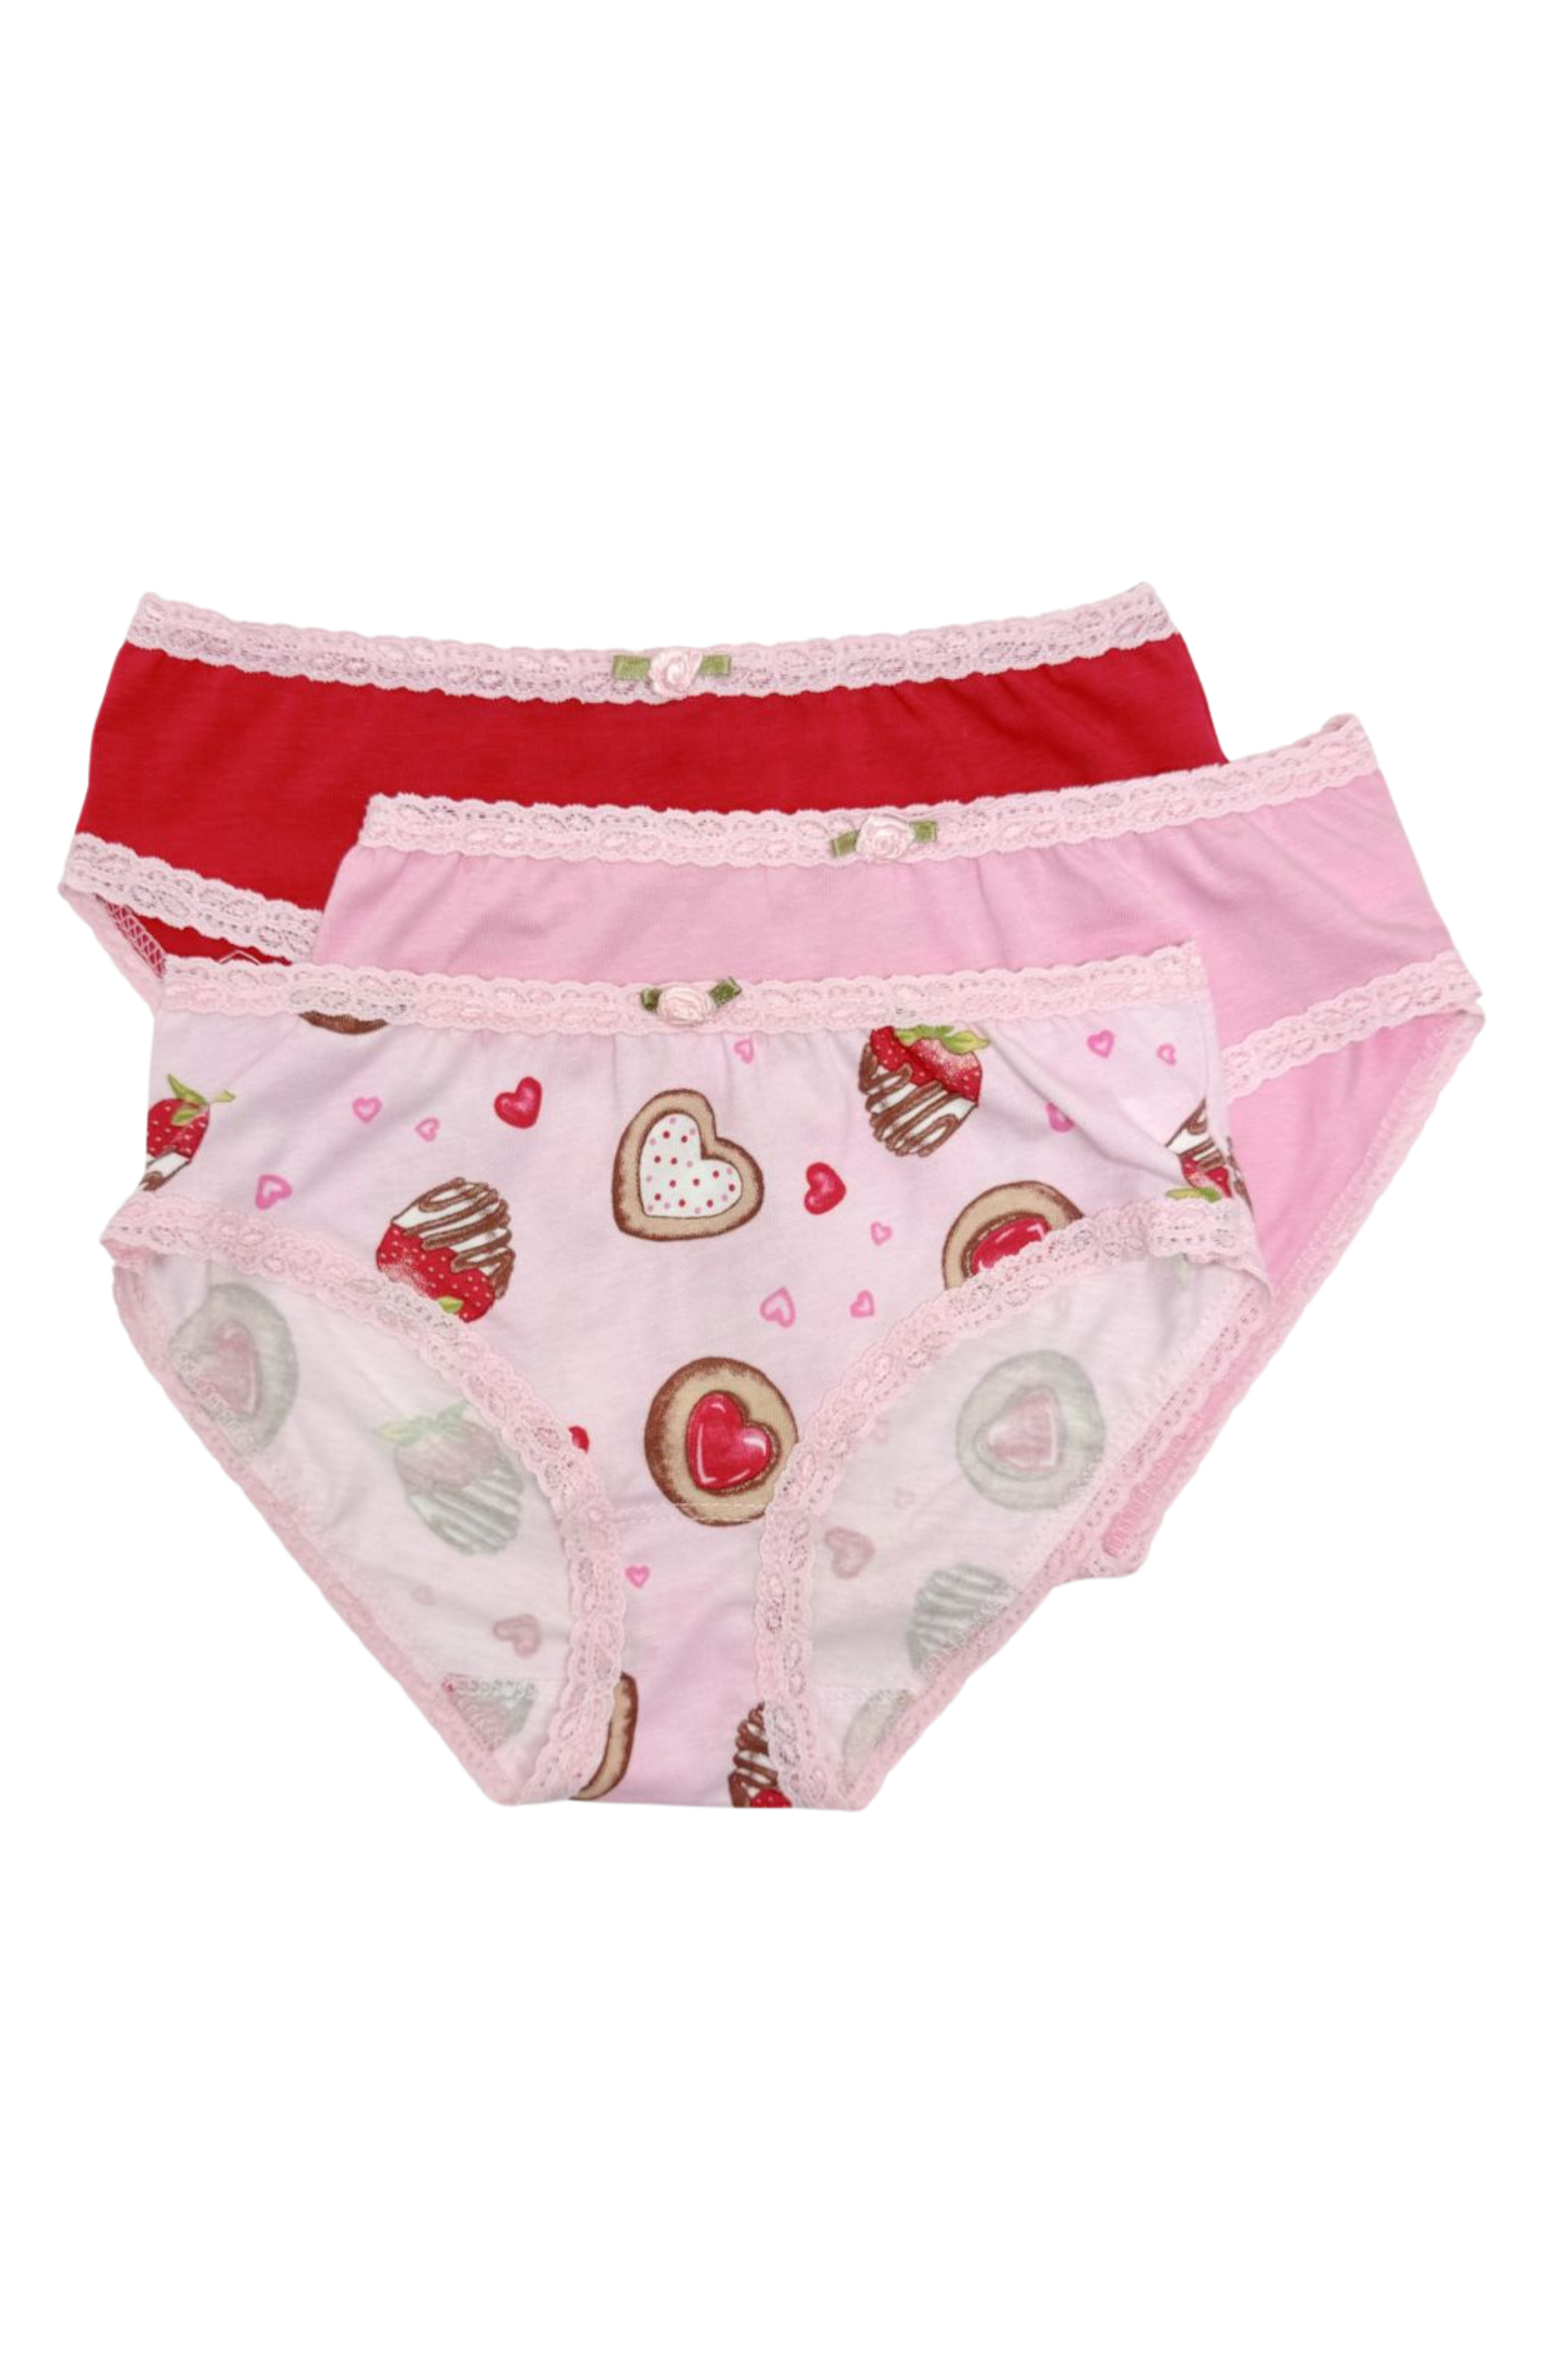 Esme - Sweet Delight 3 Panty Pack (3 Pack) 7-16 Girls Underwear